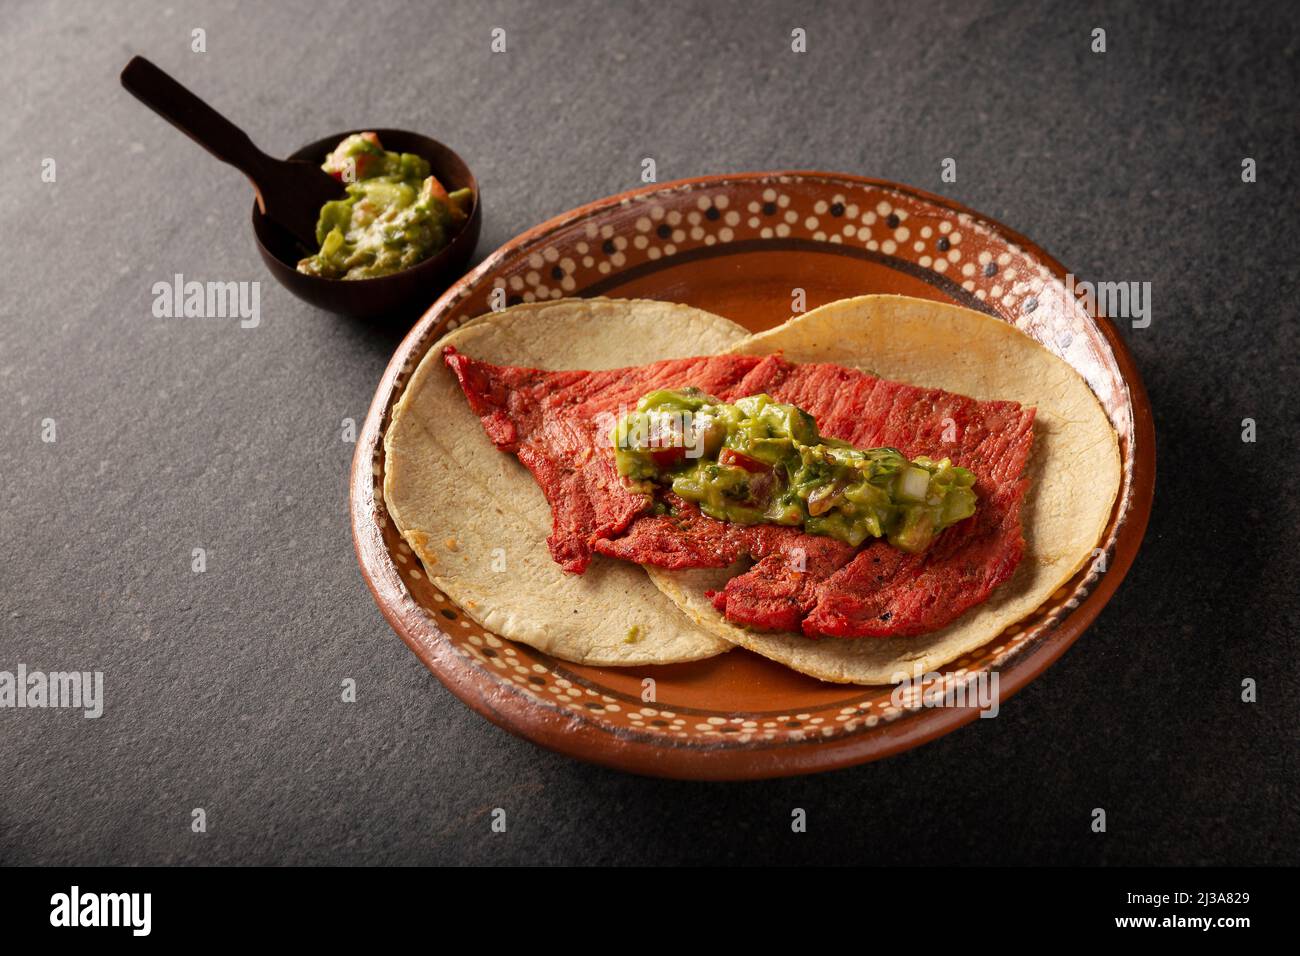 Tacos de Cecina Enchilada con Guacamole. Gesalzenes, sonnengetrocknetes Schweinefleisch oder Rindfleisch, gewürzt mit verschiedenen Gewürzen und Chilischoten, in der Regel in Tacos gegessen Stockfoto